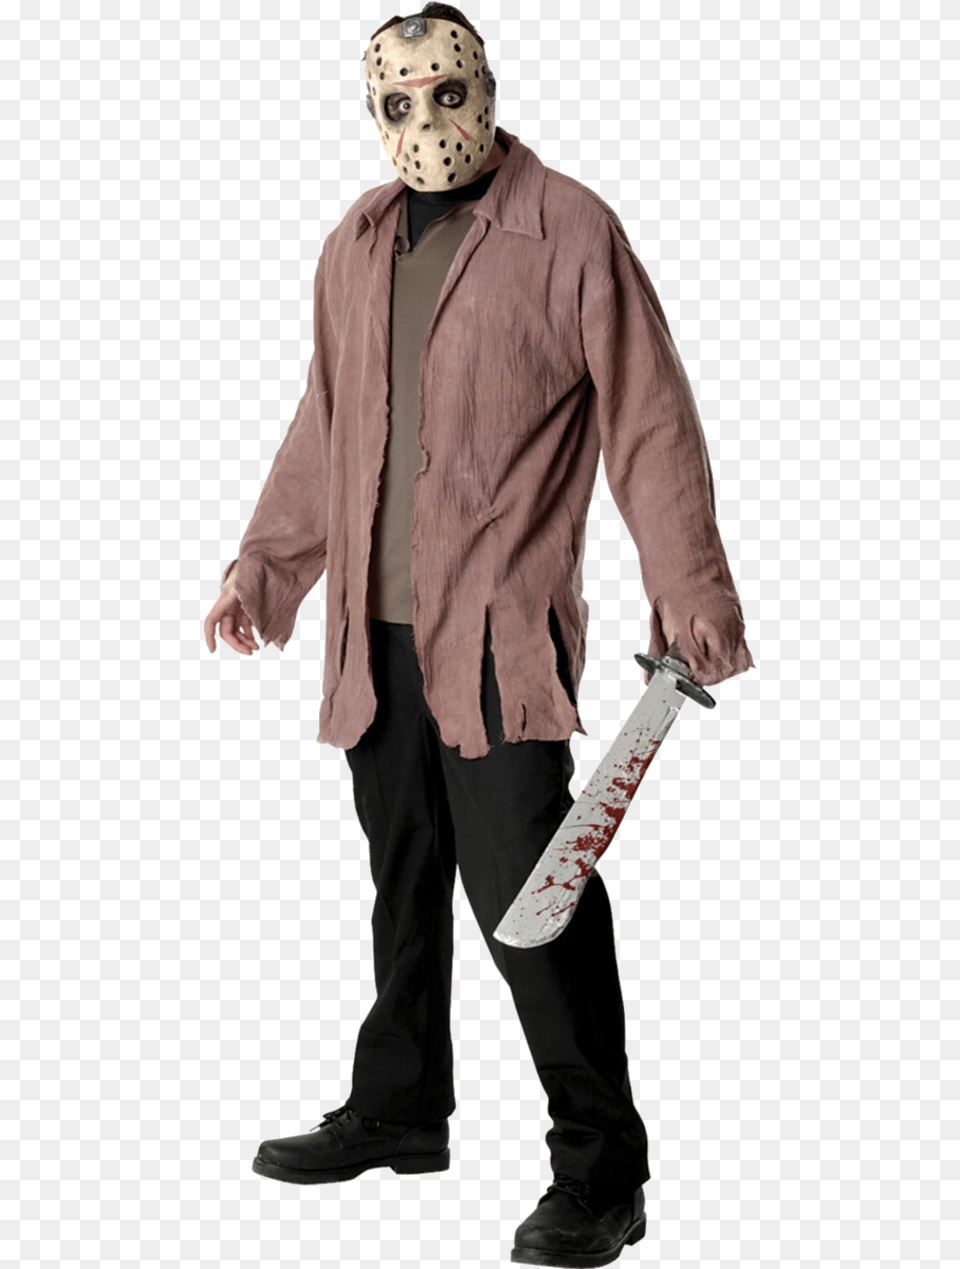 Jason Friday The 13th Costume, Long Sleeve, Clothing, Coat, Sleeve Png Image